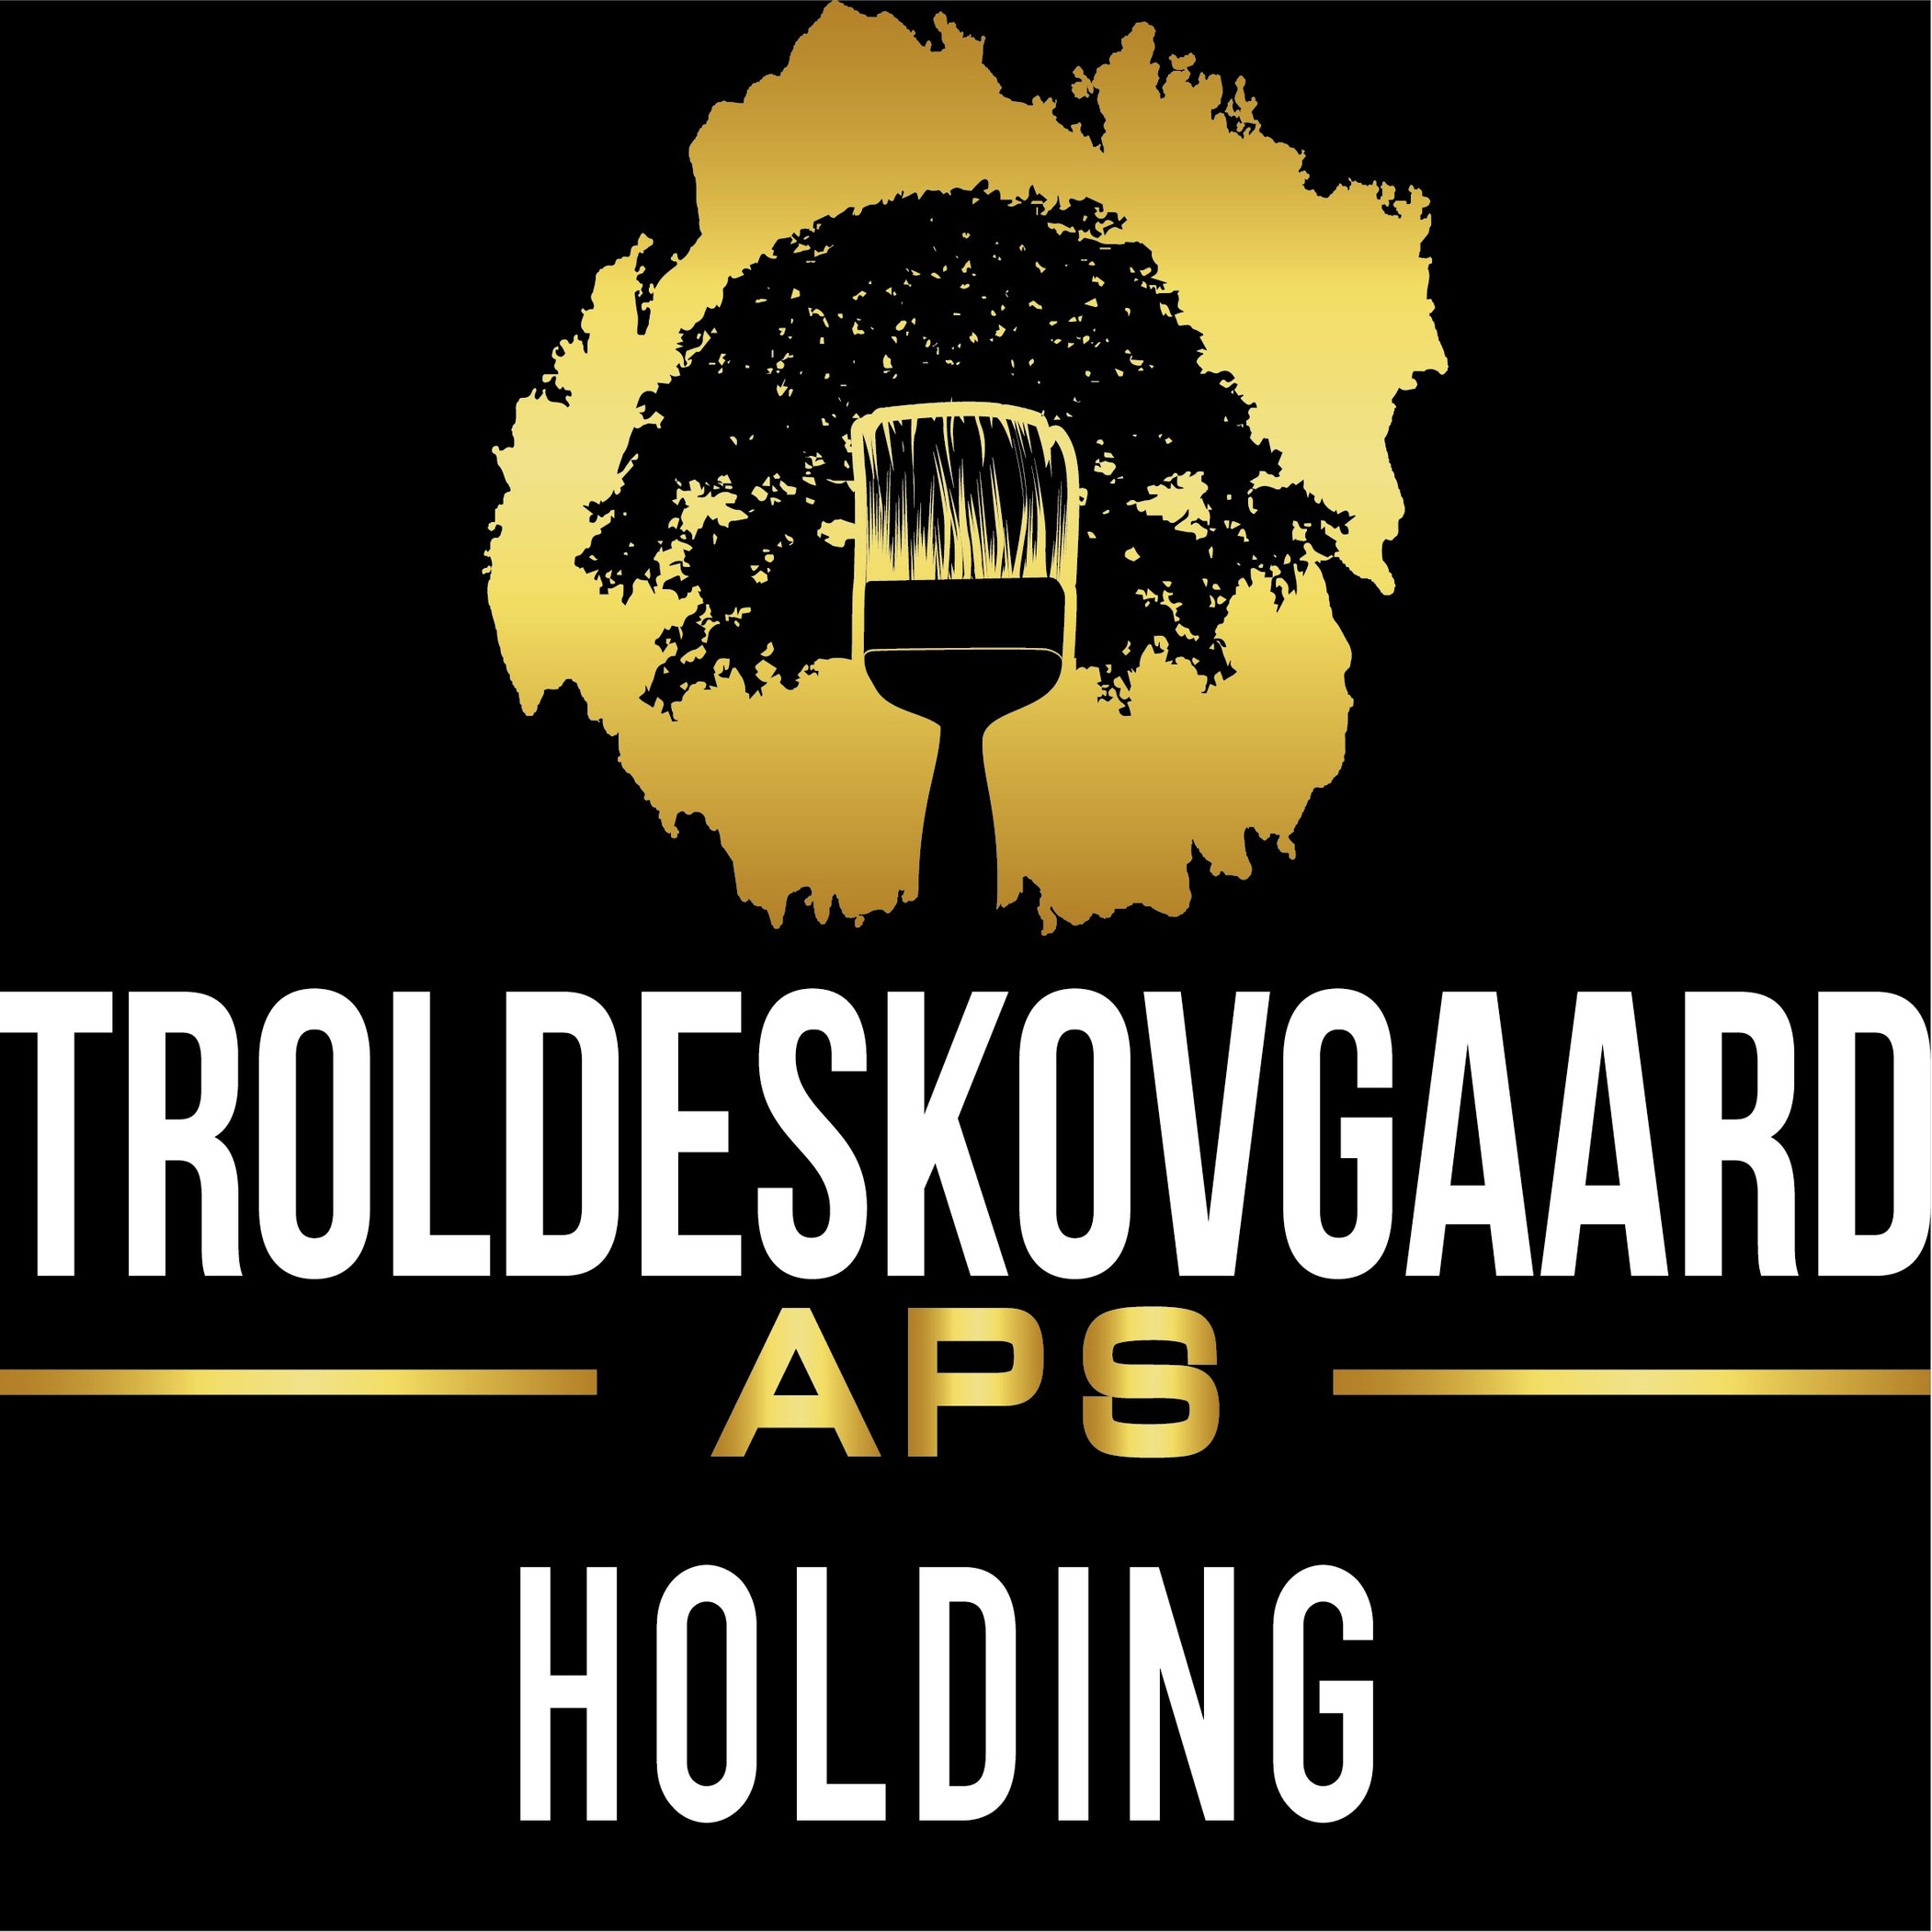 Troldeskovgaard Holding ApS